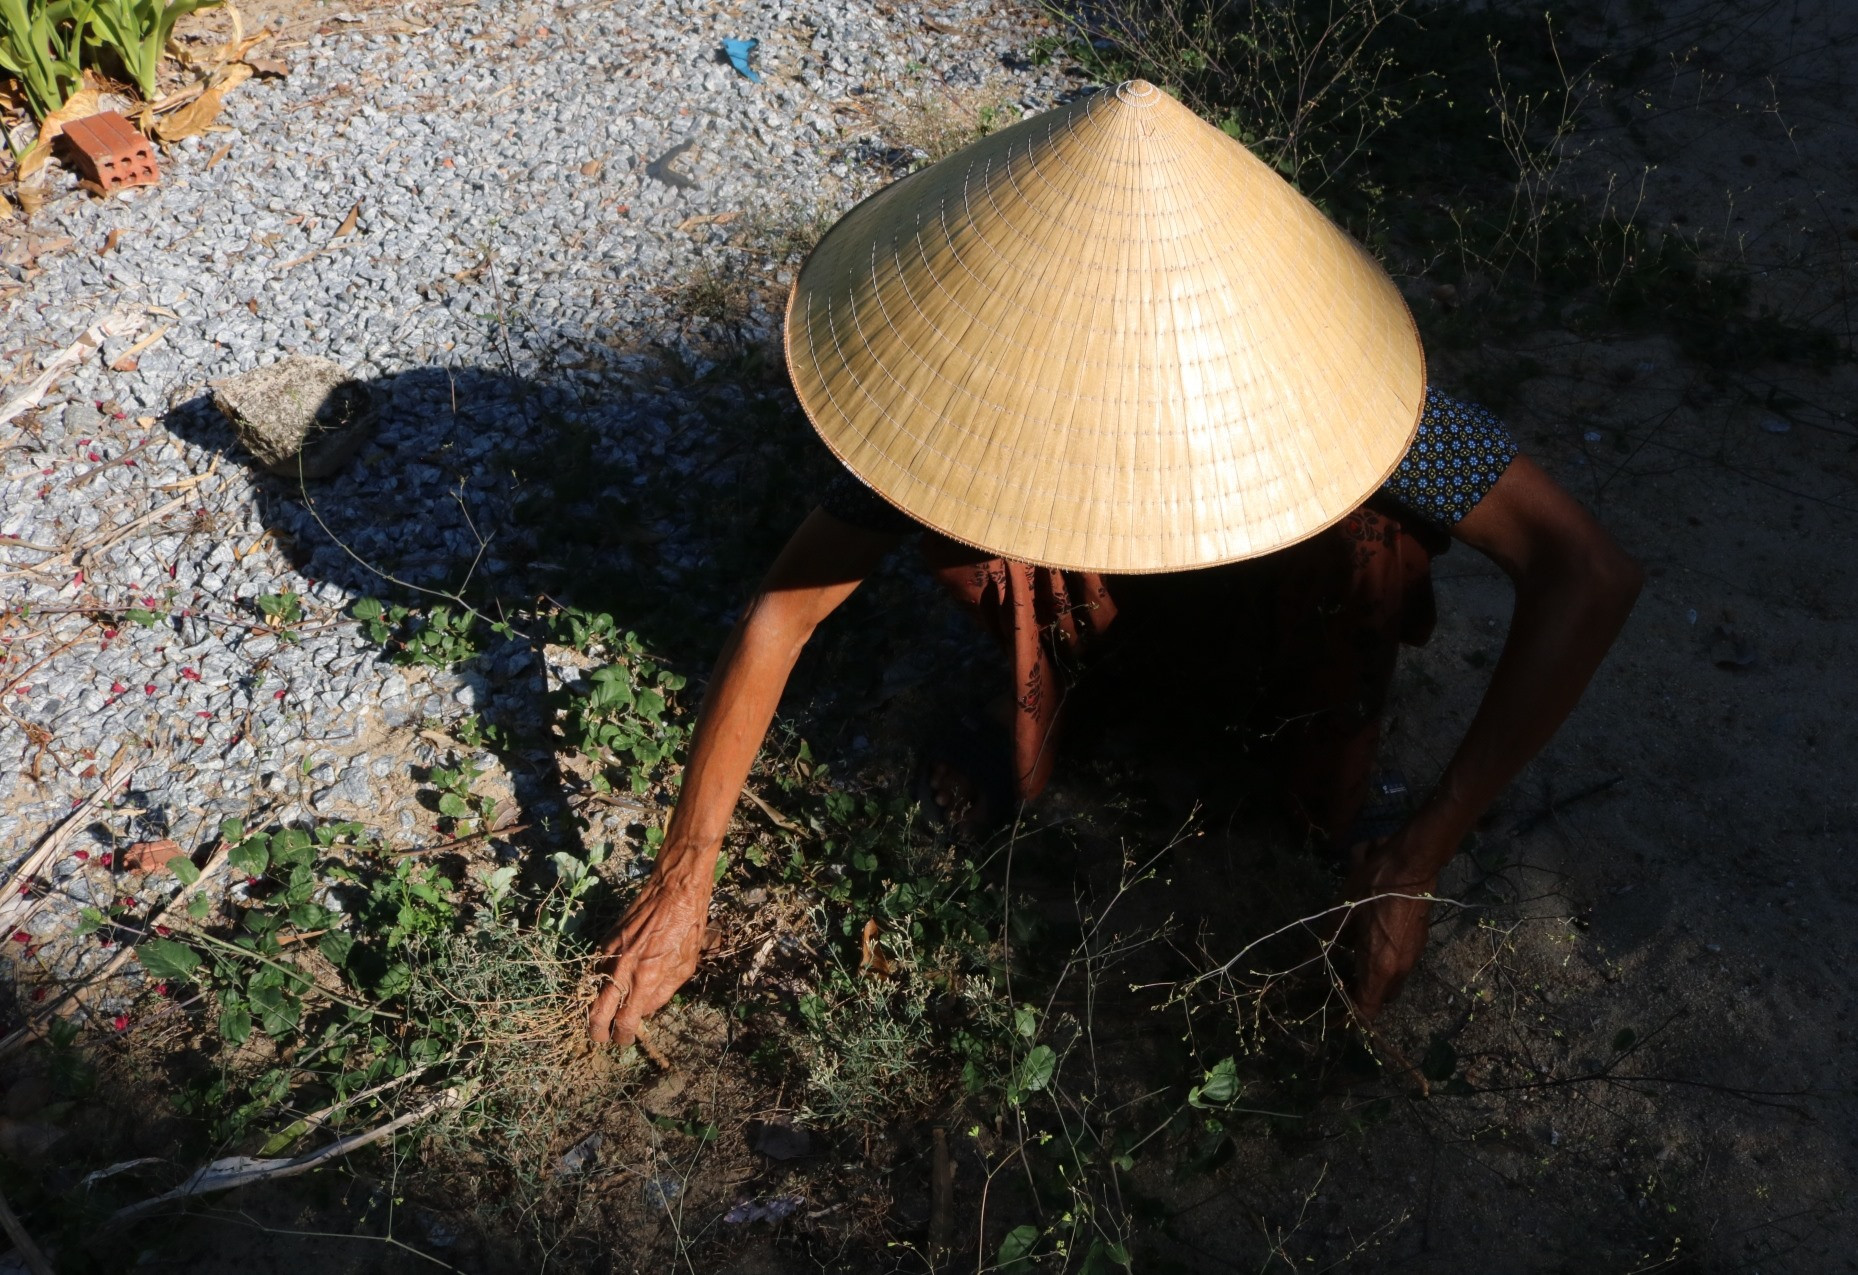 Bà Nguyễn Thị Hòa (76 tuổi) hái cây cỏ gạo gần nhà. Ảnh: T.H